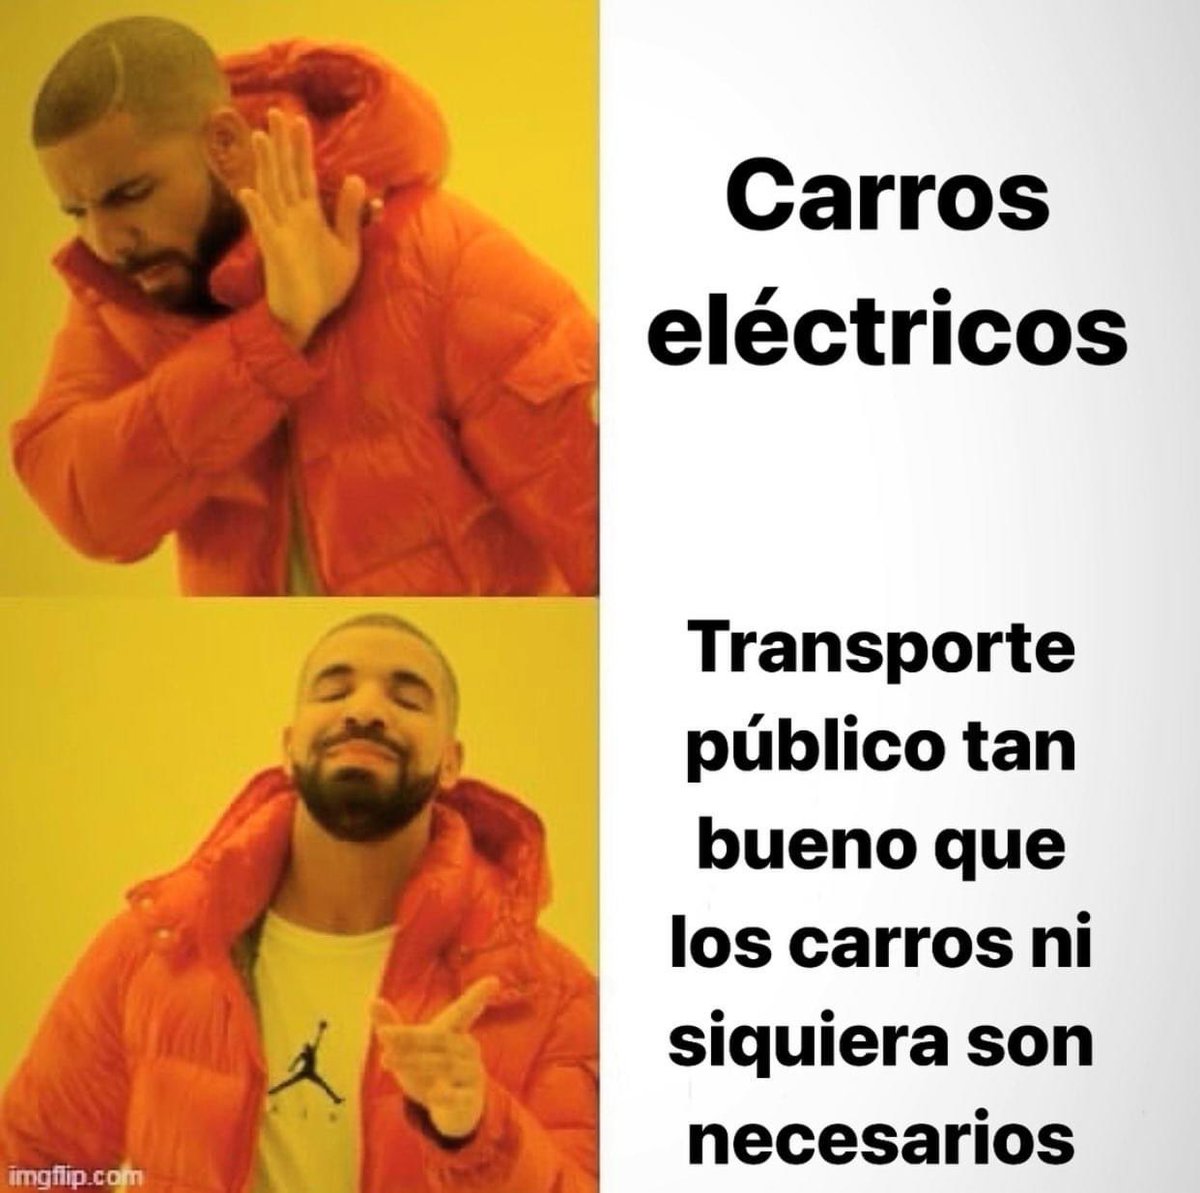 Se han preguntado cuánto contamina producir un auto  eléctrico? 🚙⚡️
#dankmemesdaily #memes #elyaclásico #memedeldía #memesdaily #dankmemes #momos #memesrandom #randommemes #memasos #momazos #momasos #memazos